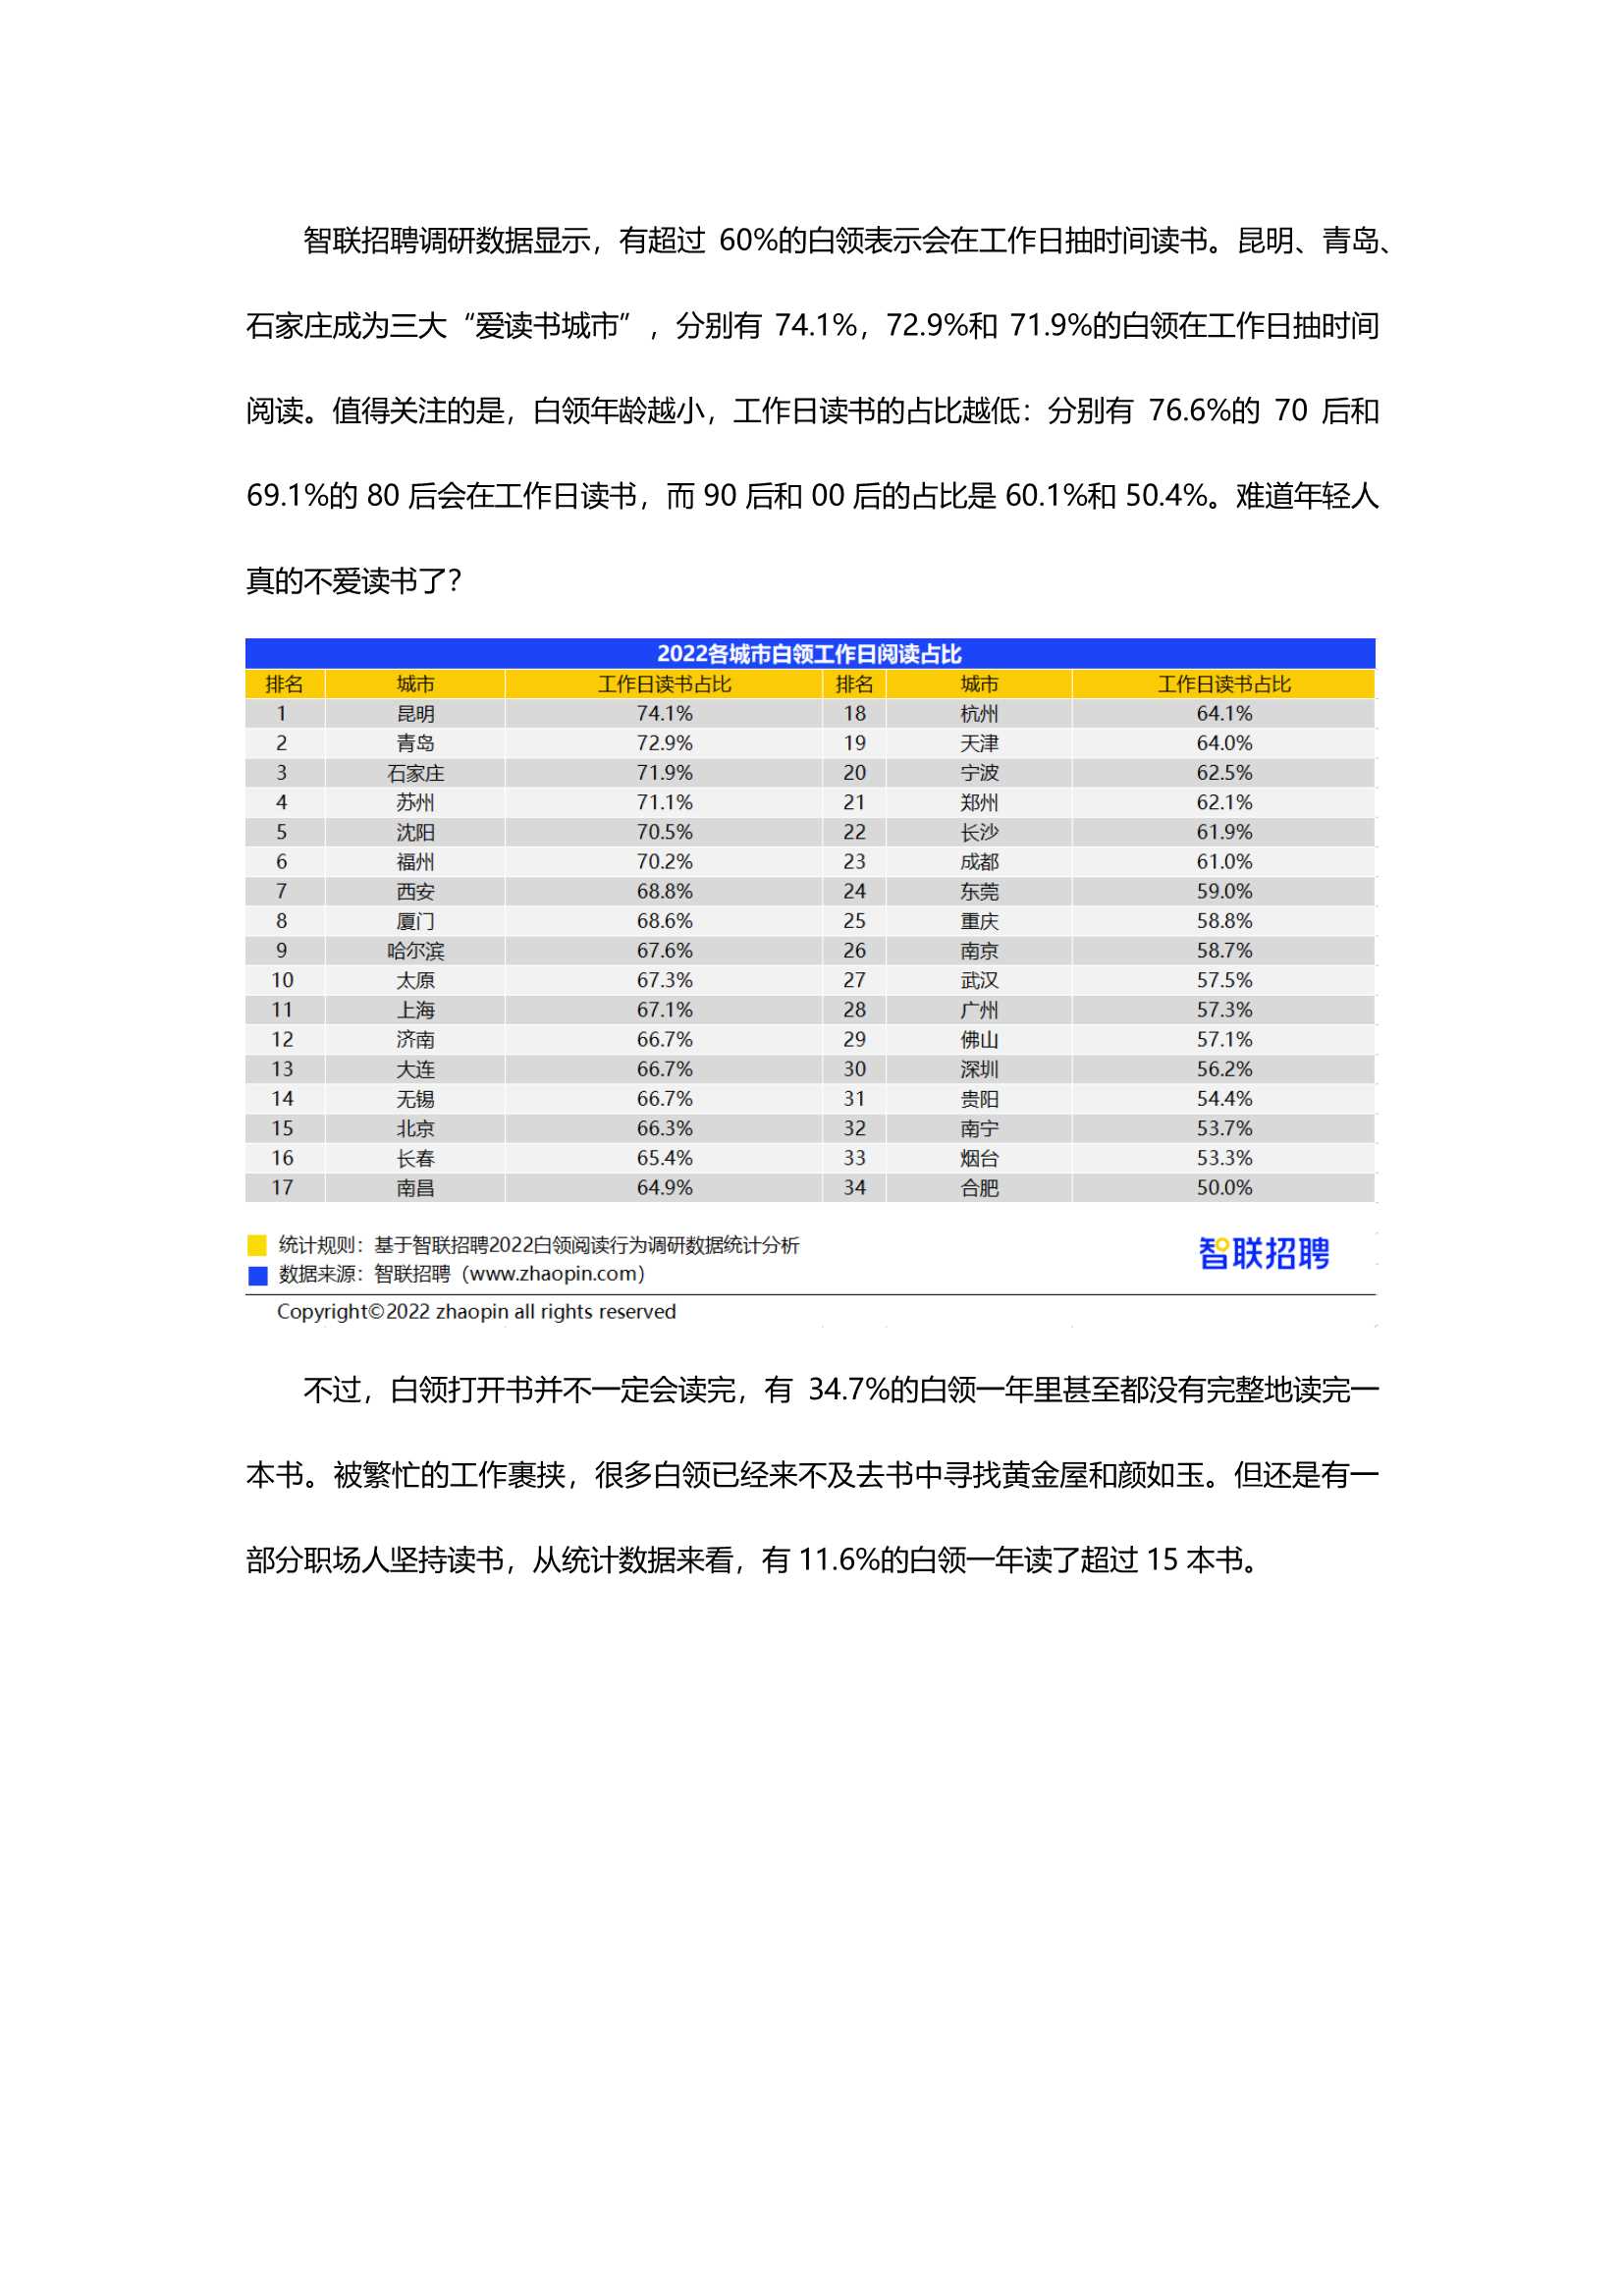 智联招聘-2022白领阅读行为调研报告-2022.04-18页